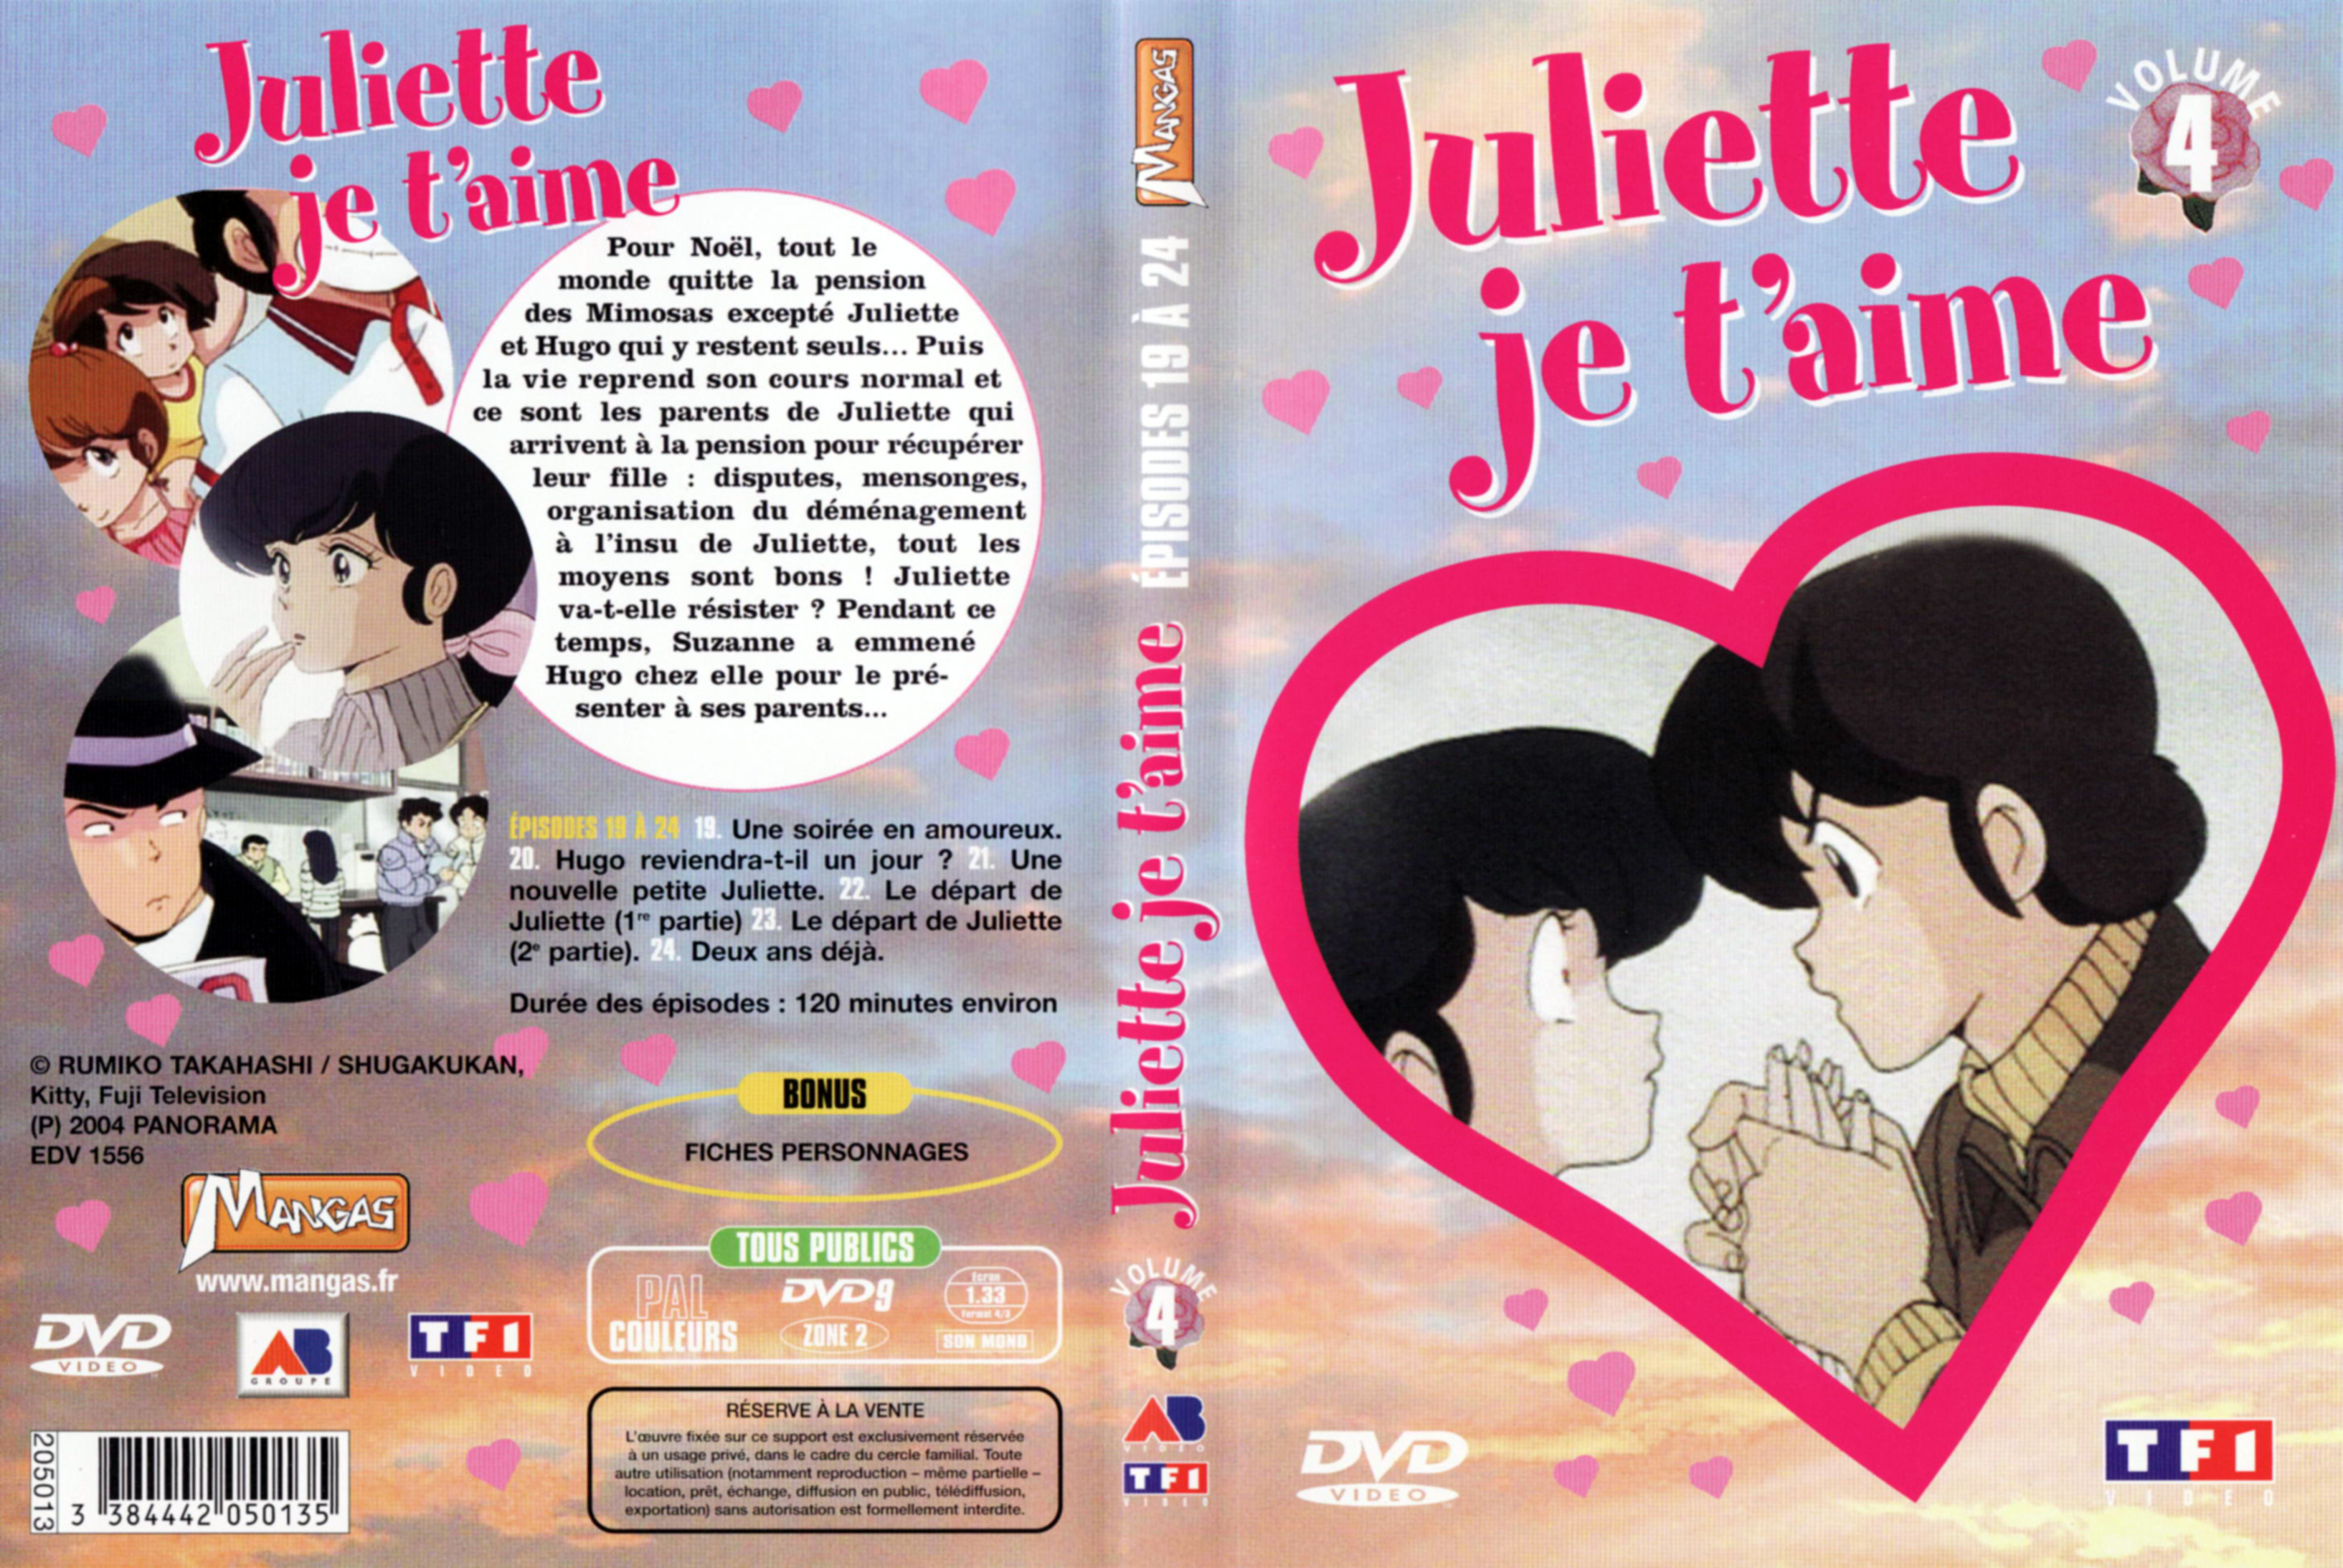 Jaquette DVD Juliette je t aime vol 04